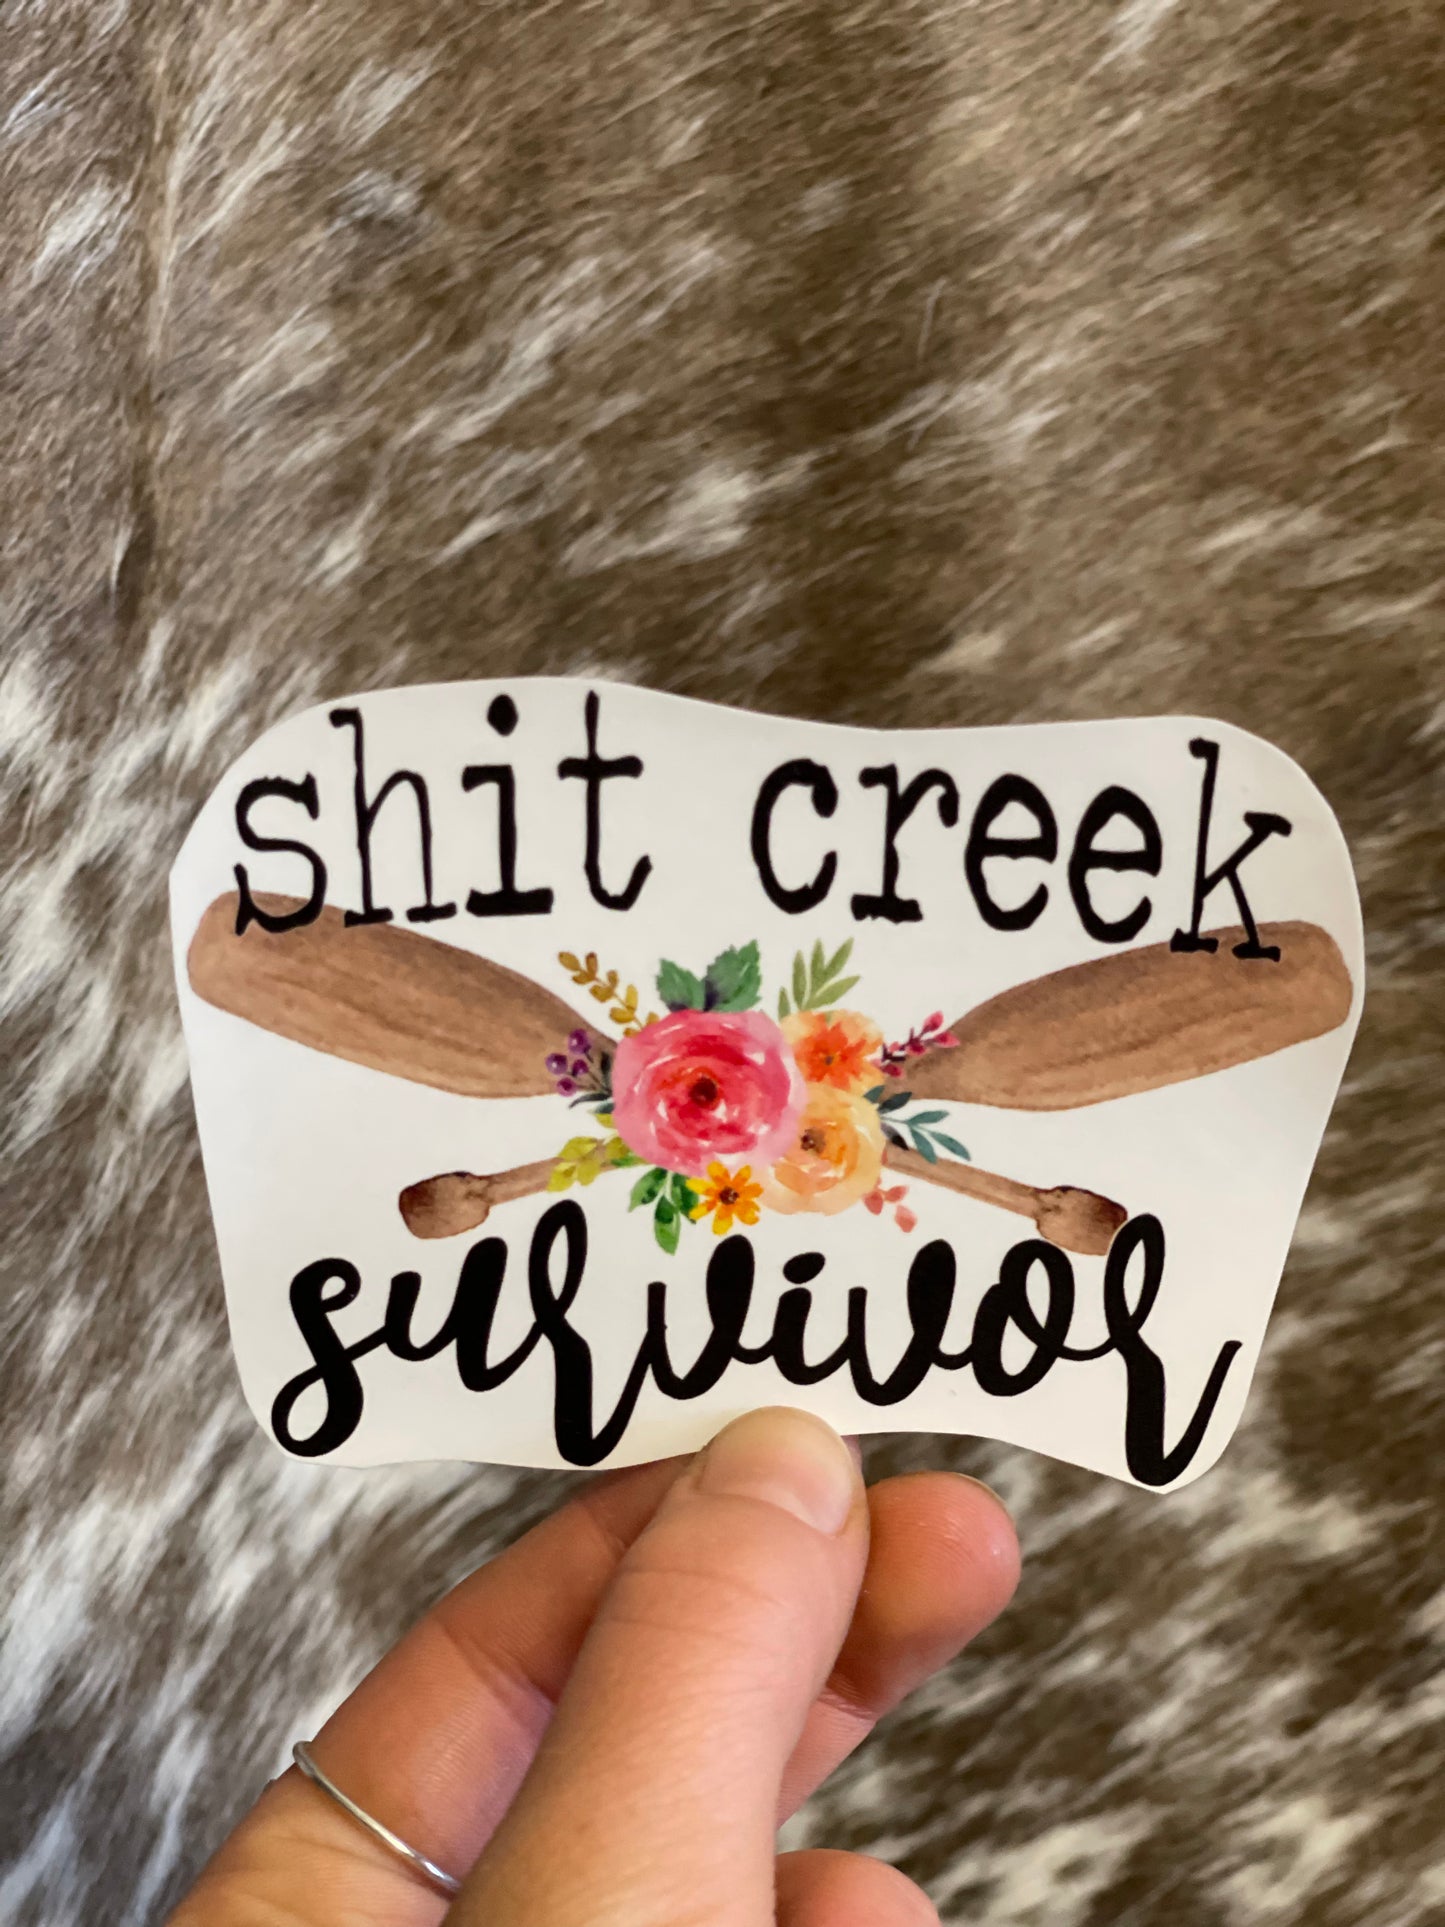 Shit Creek Survivor Sticker